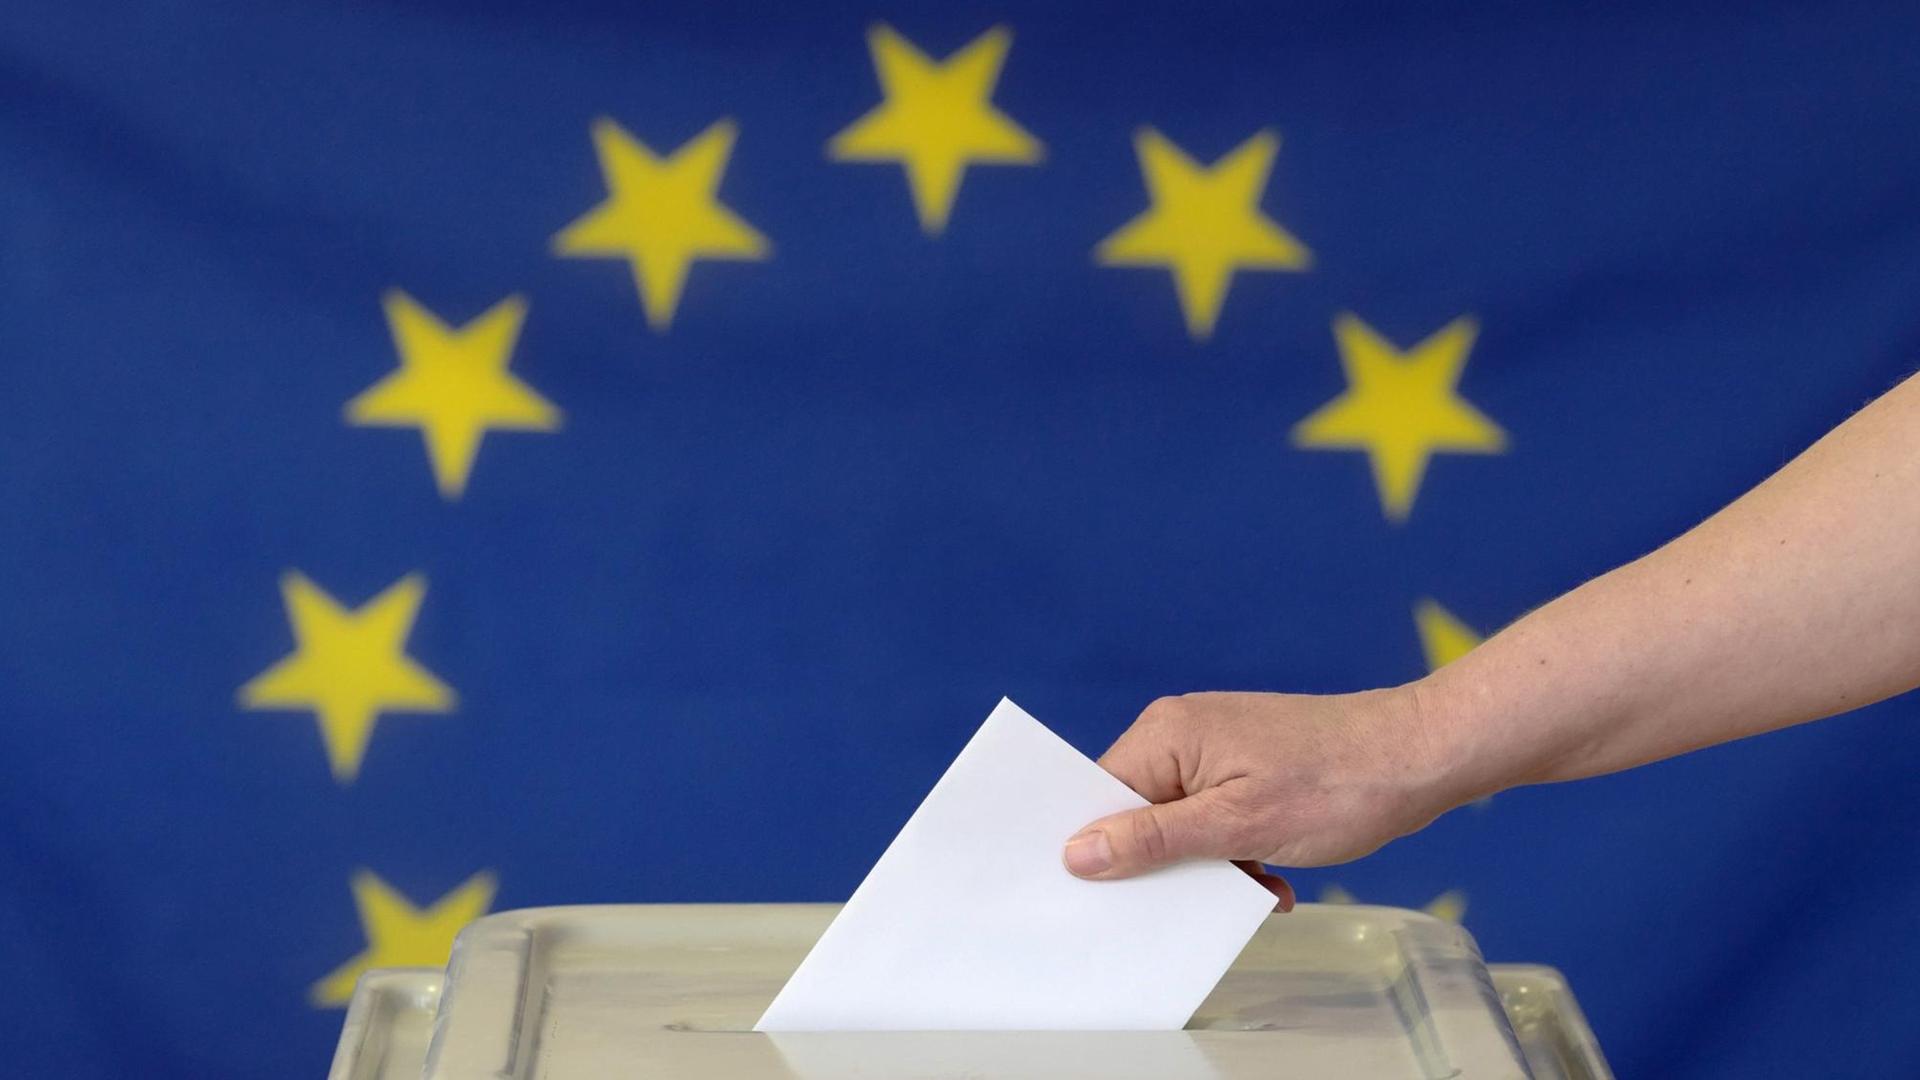 Eine Hand steckt einen Umschlag in eine Wahlurne vor der Europafahne.